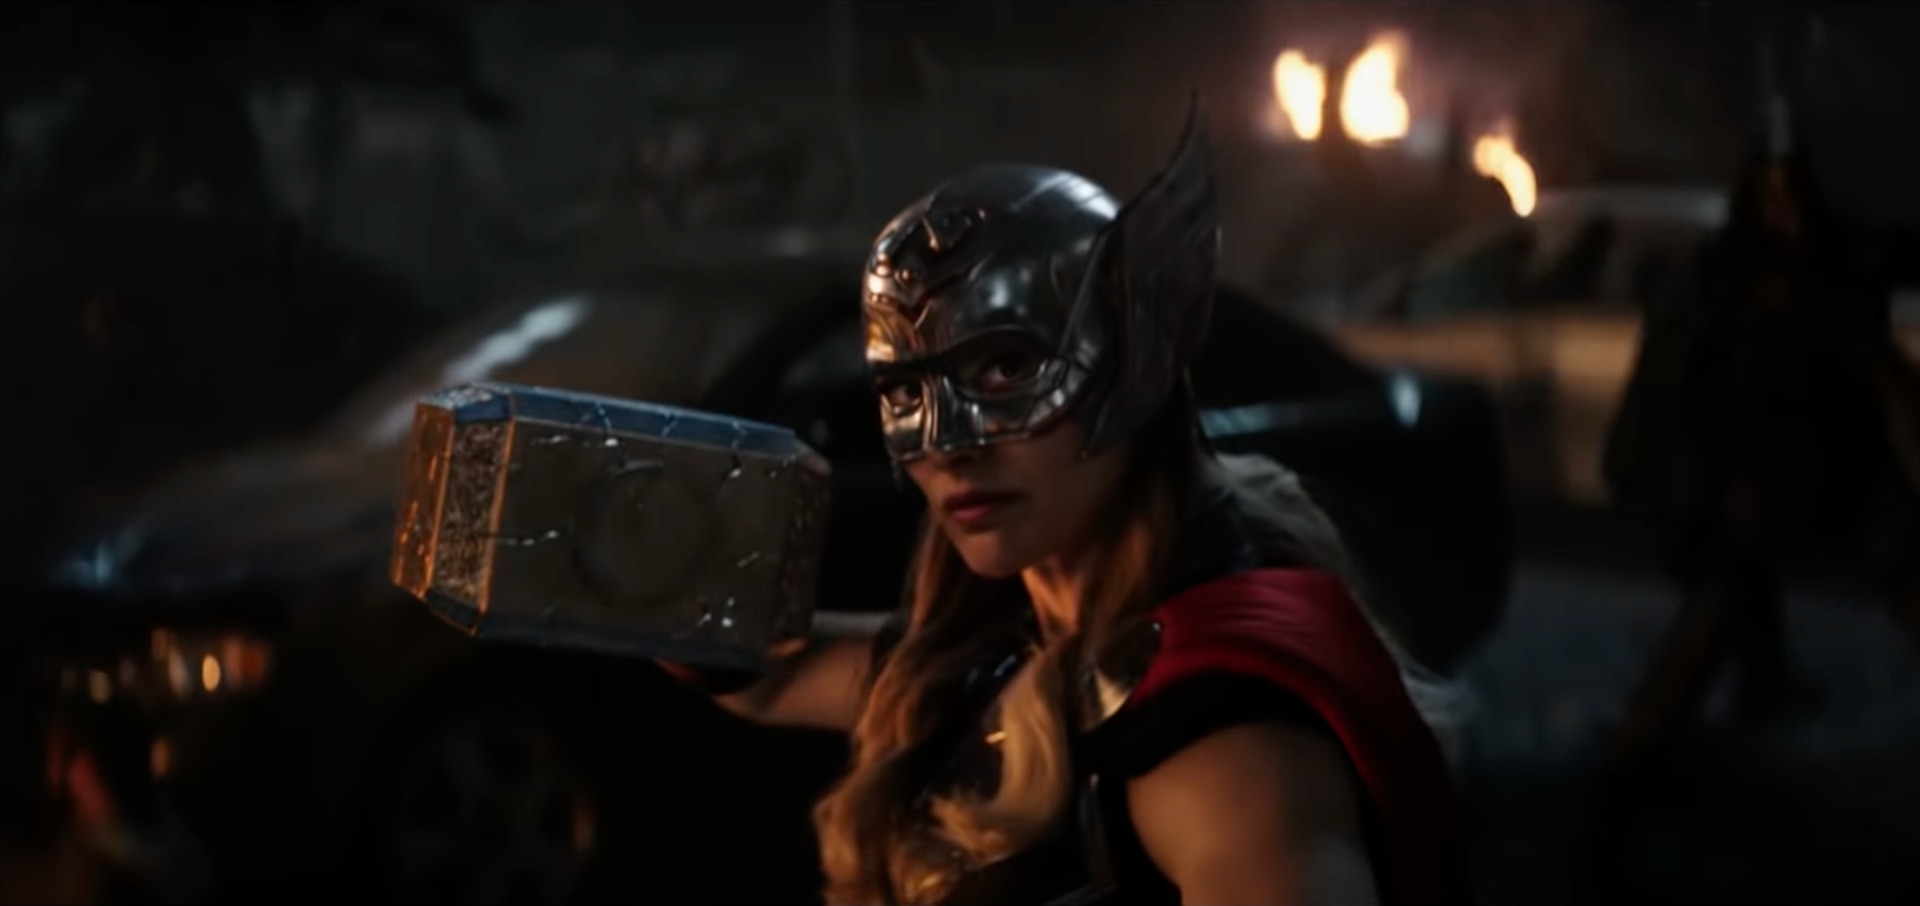 Thor: Love and Thunder Trailer Breakdown: The God of Thunder is Back